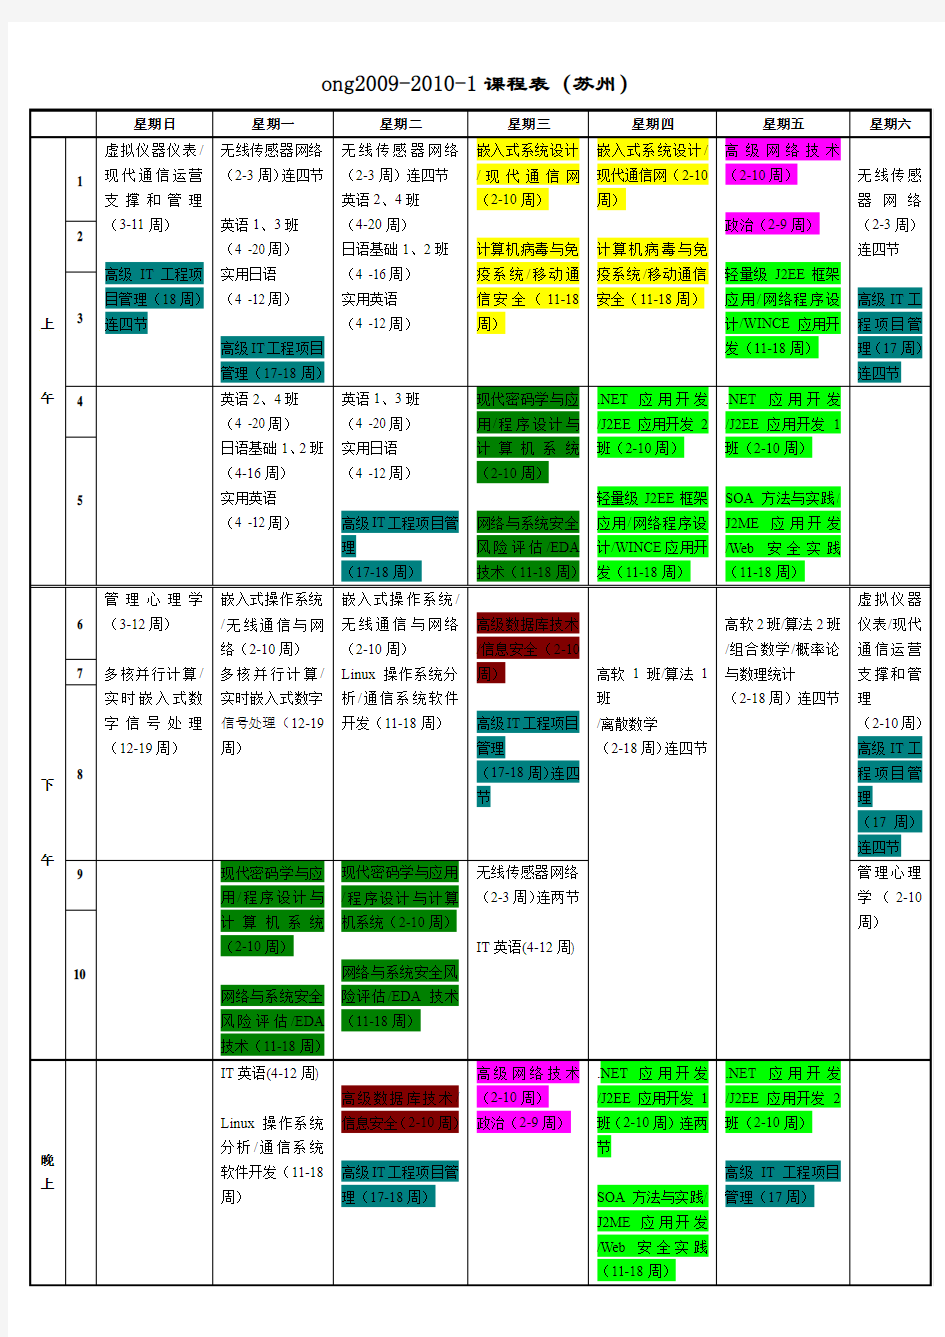 中国科学技术大学软件学院(苏州)2009-2010课程表